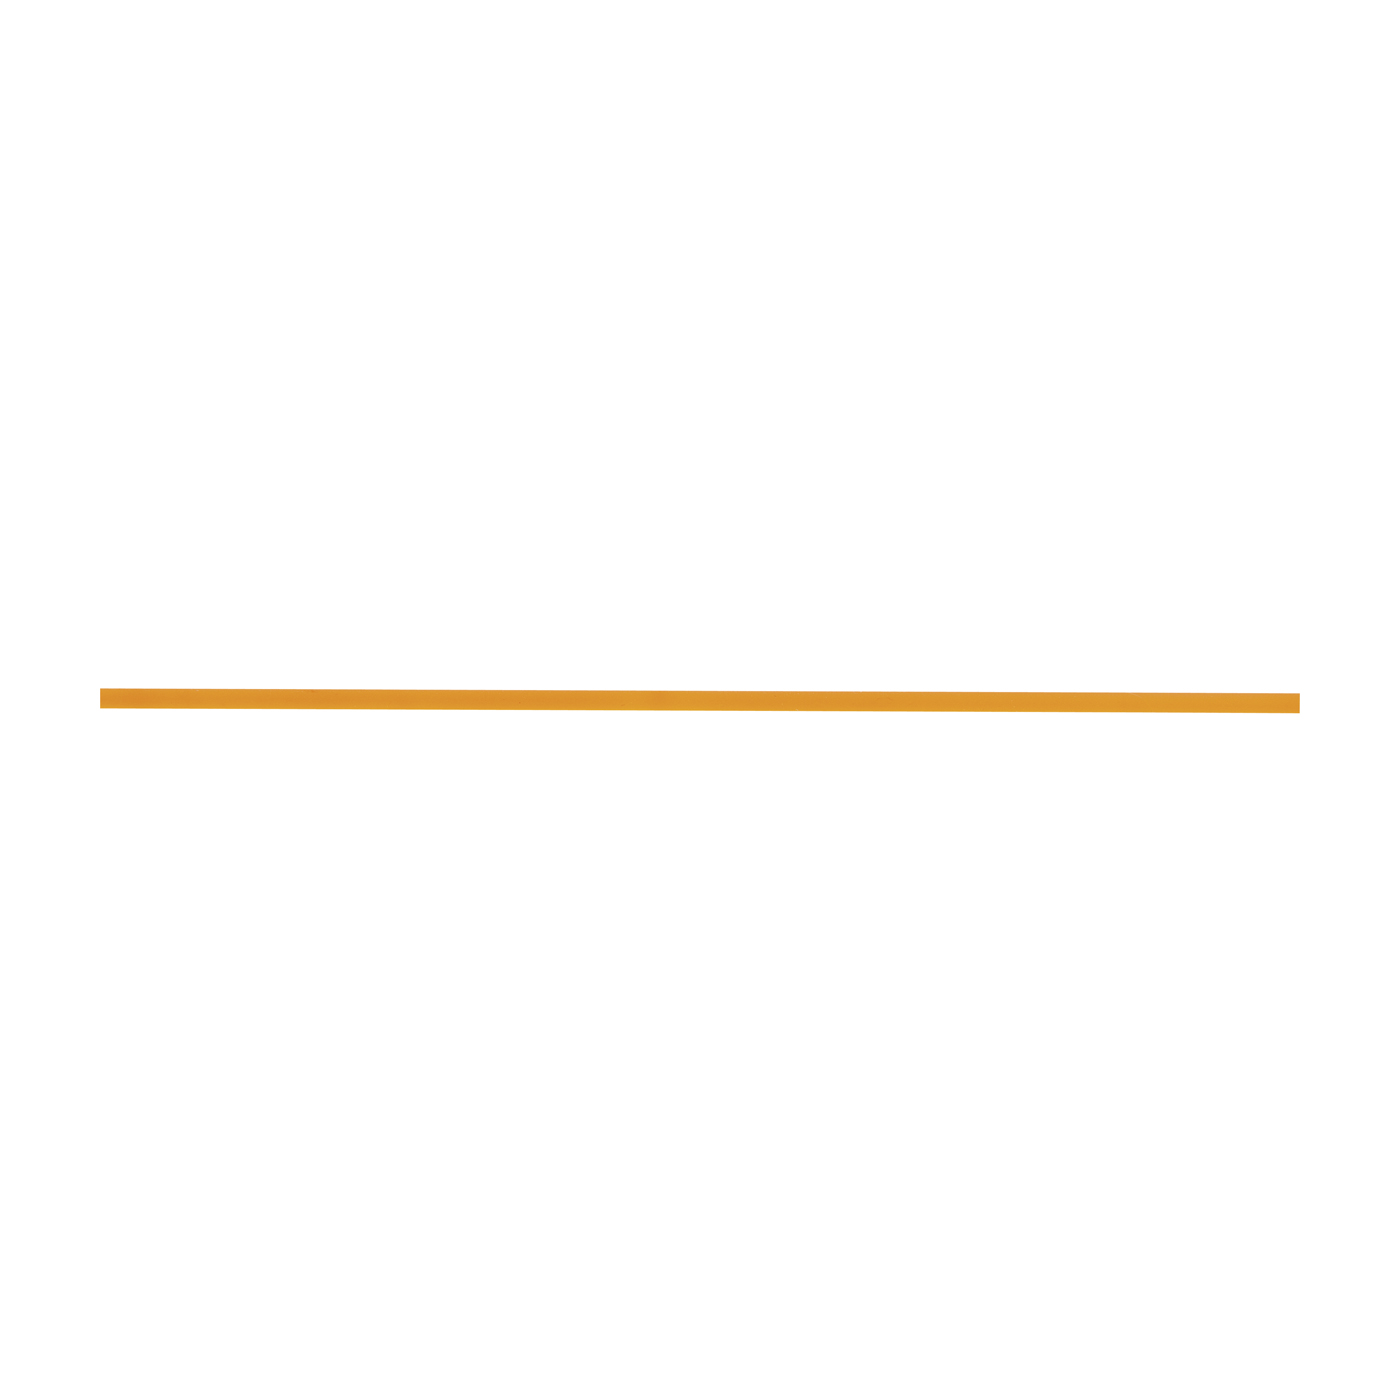 Kautschukschnur, orange, ø 1,5 mm, Länge 2 m - 2 m